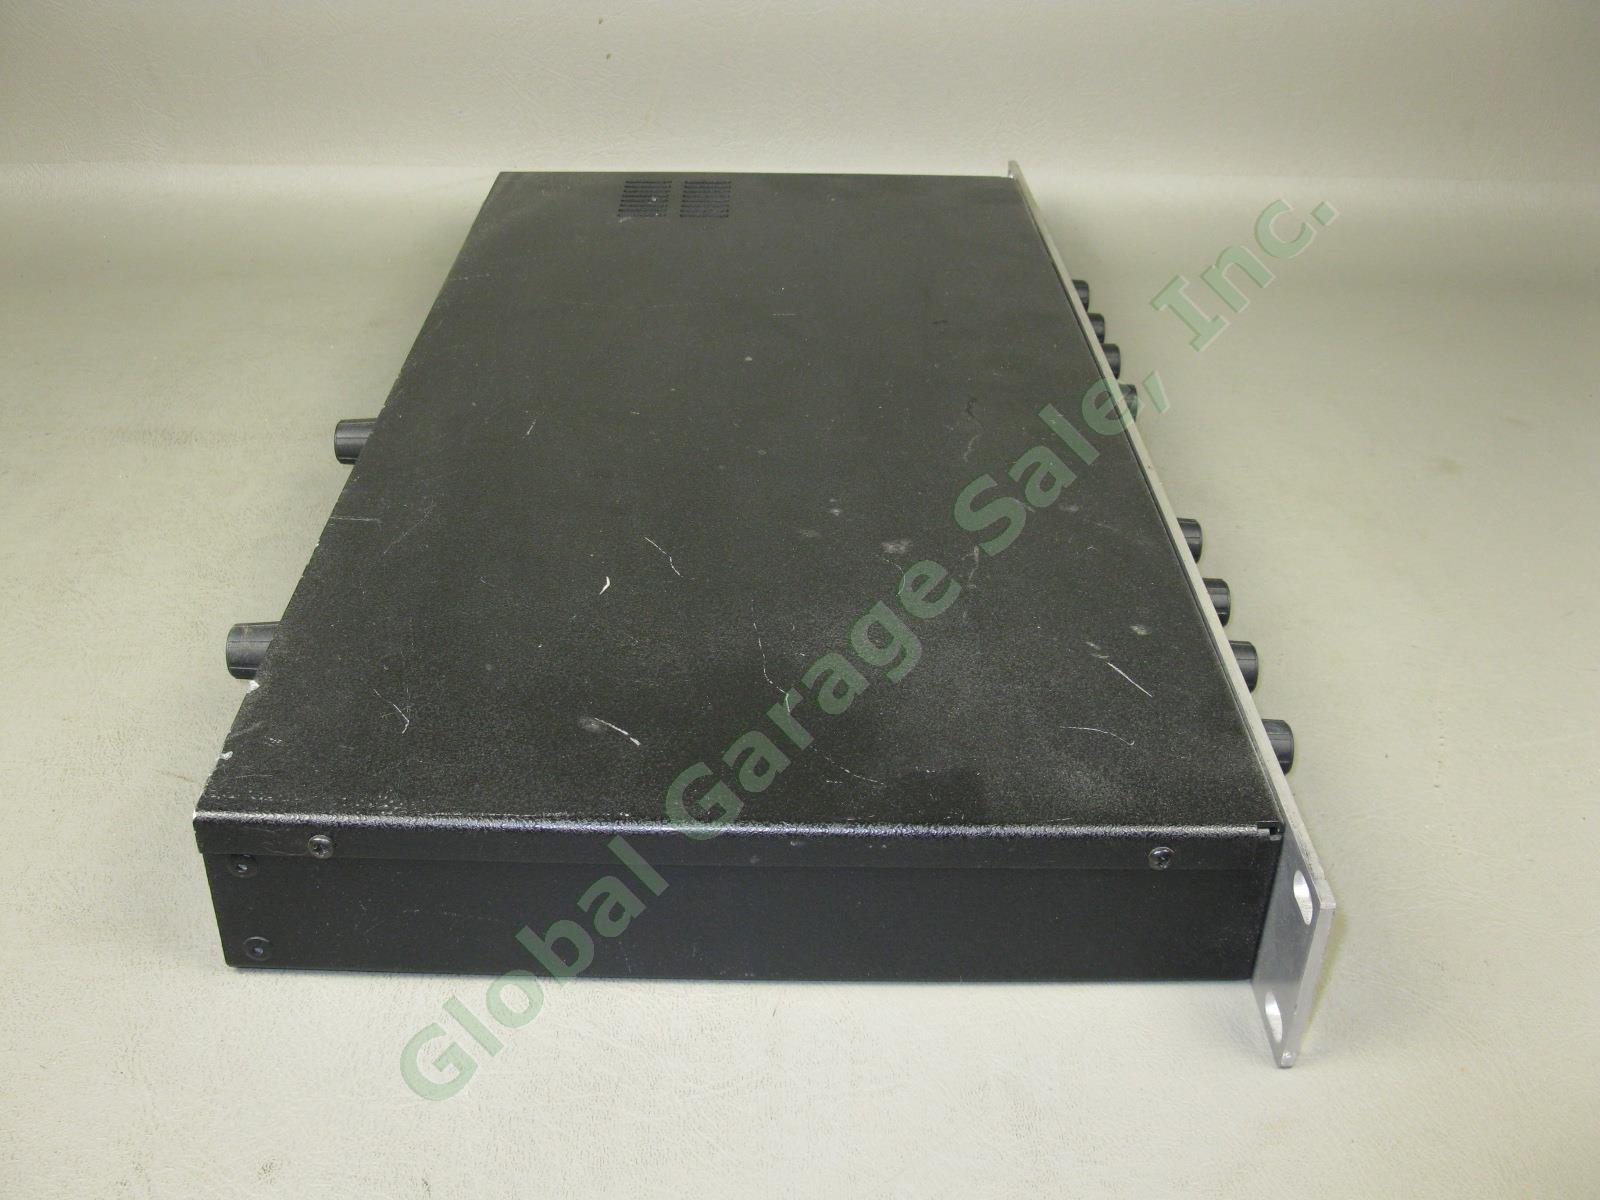 Aphex Compellor 320A Dual Channel Rack Mount Audio Compressor Leveler Limiter NR 5